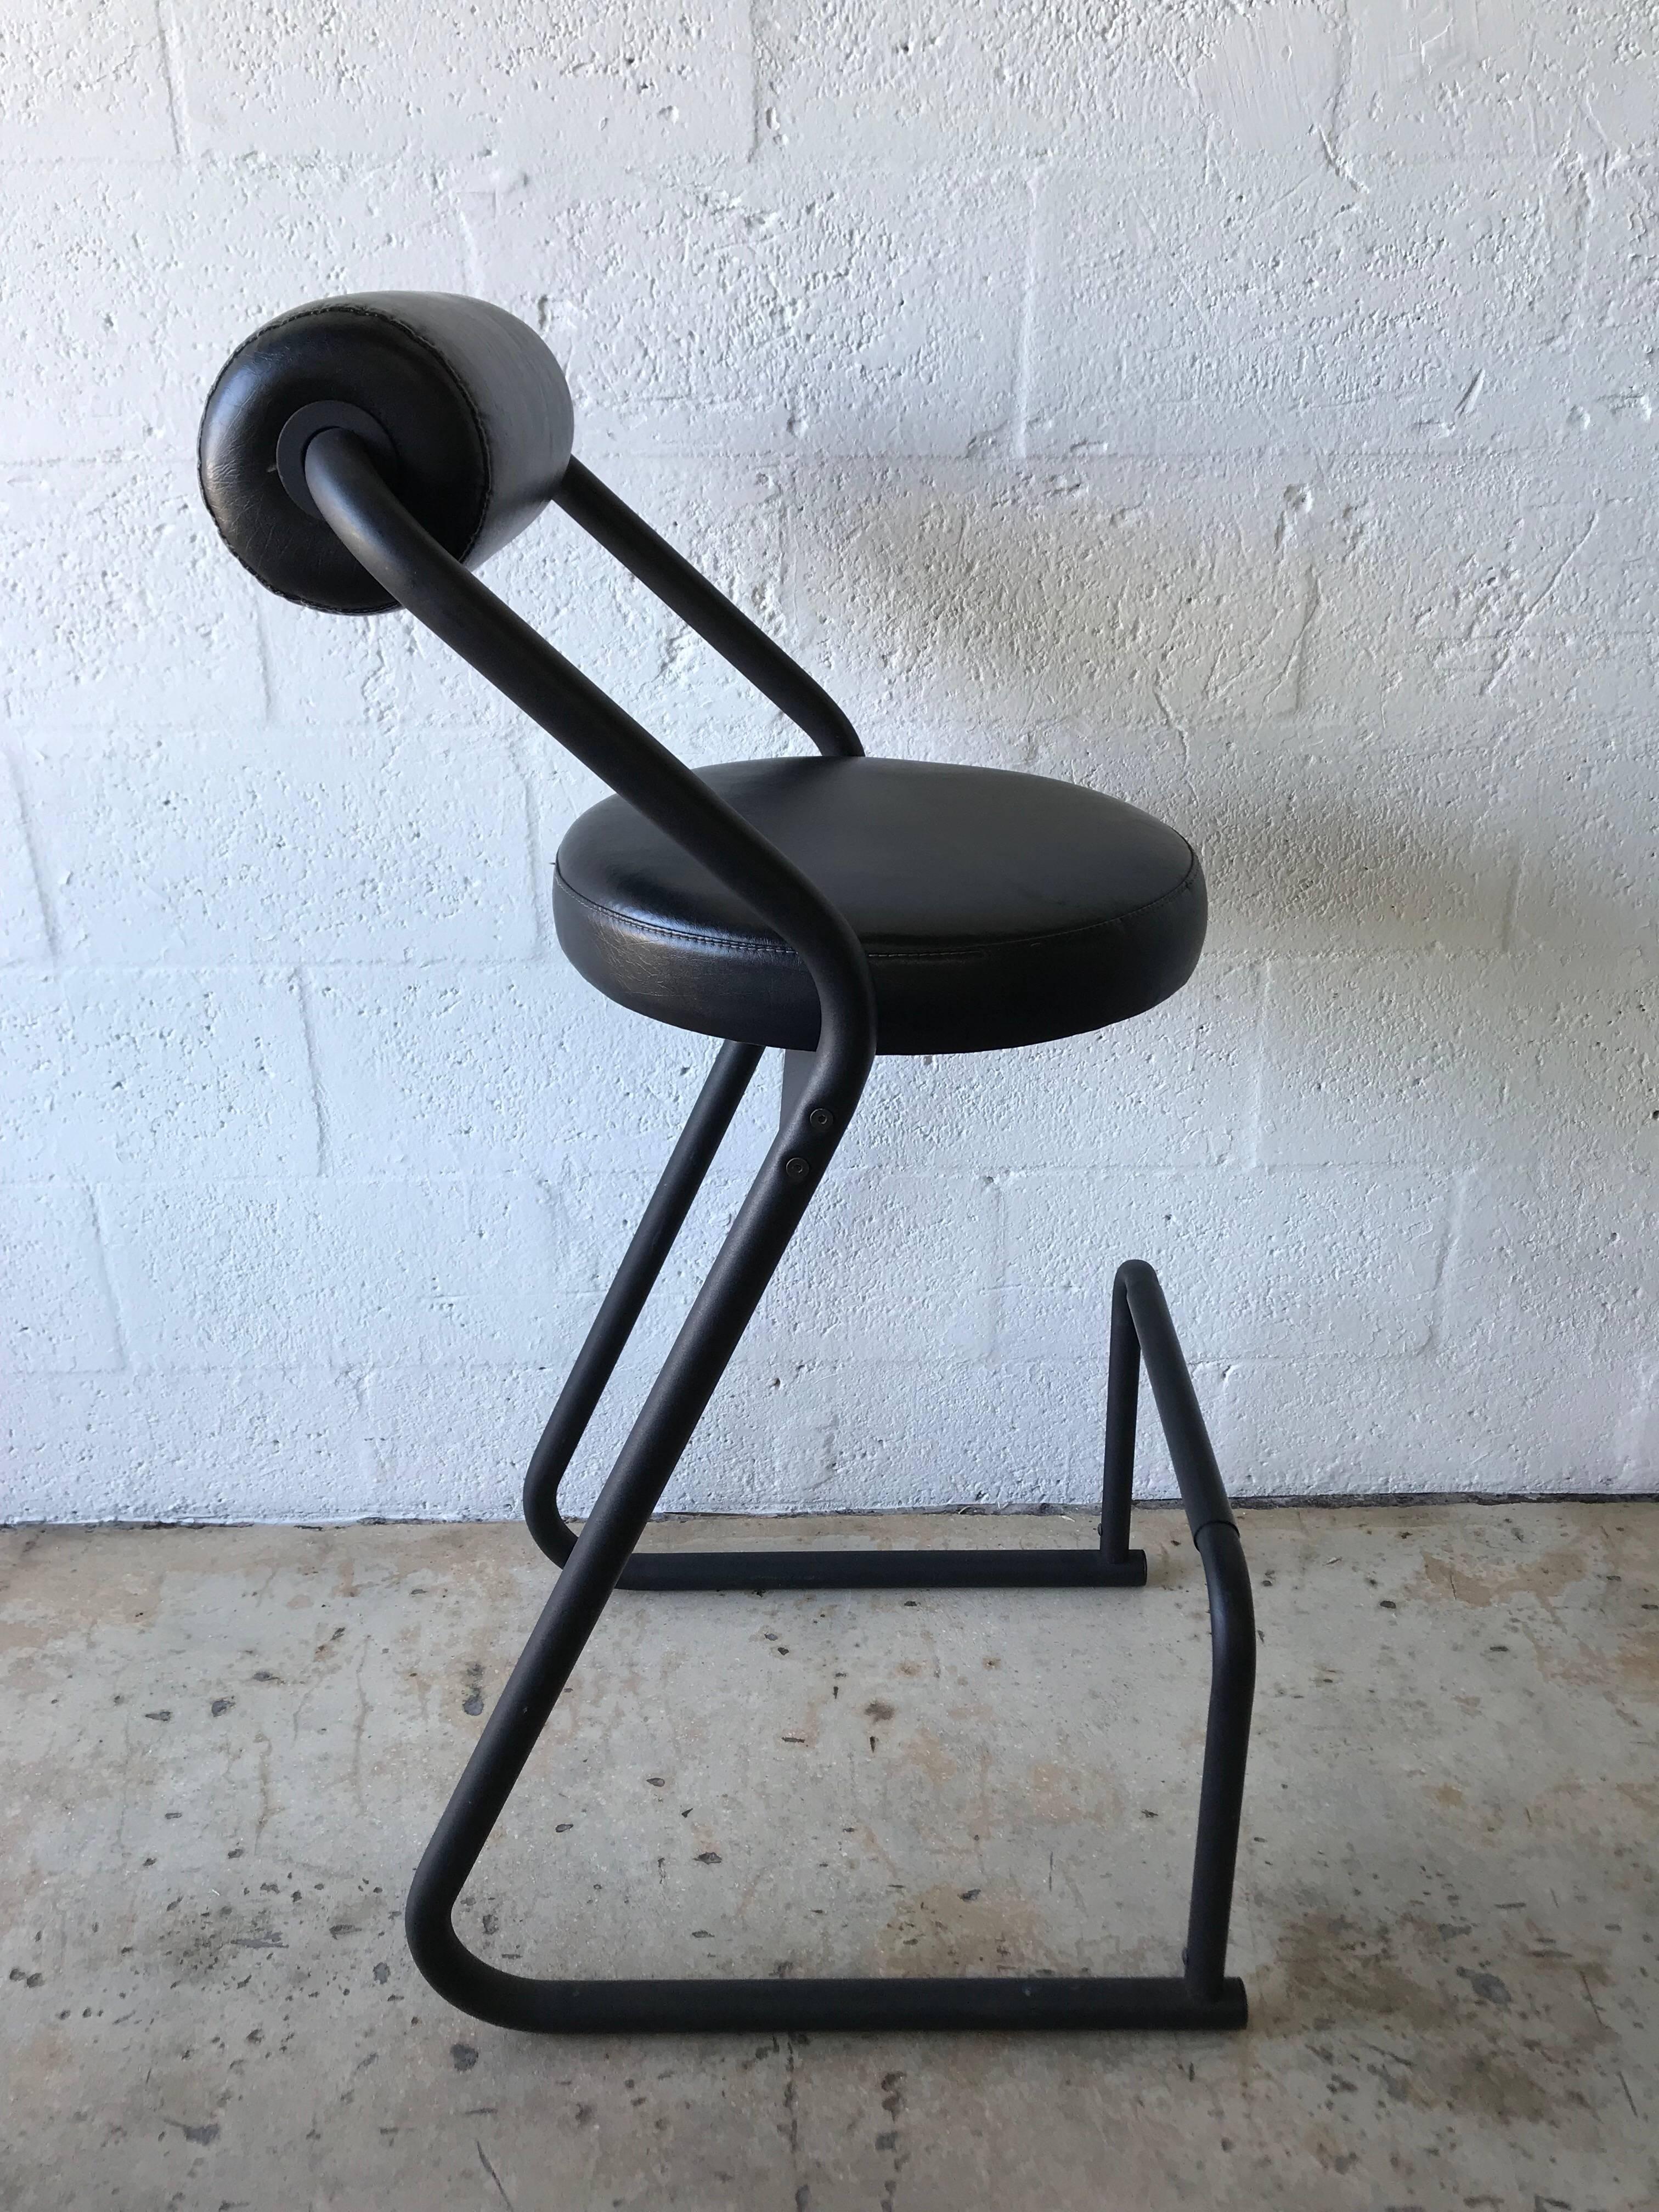 gibo creations bar stools